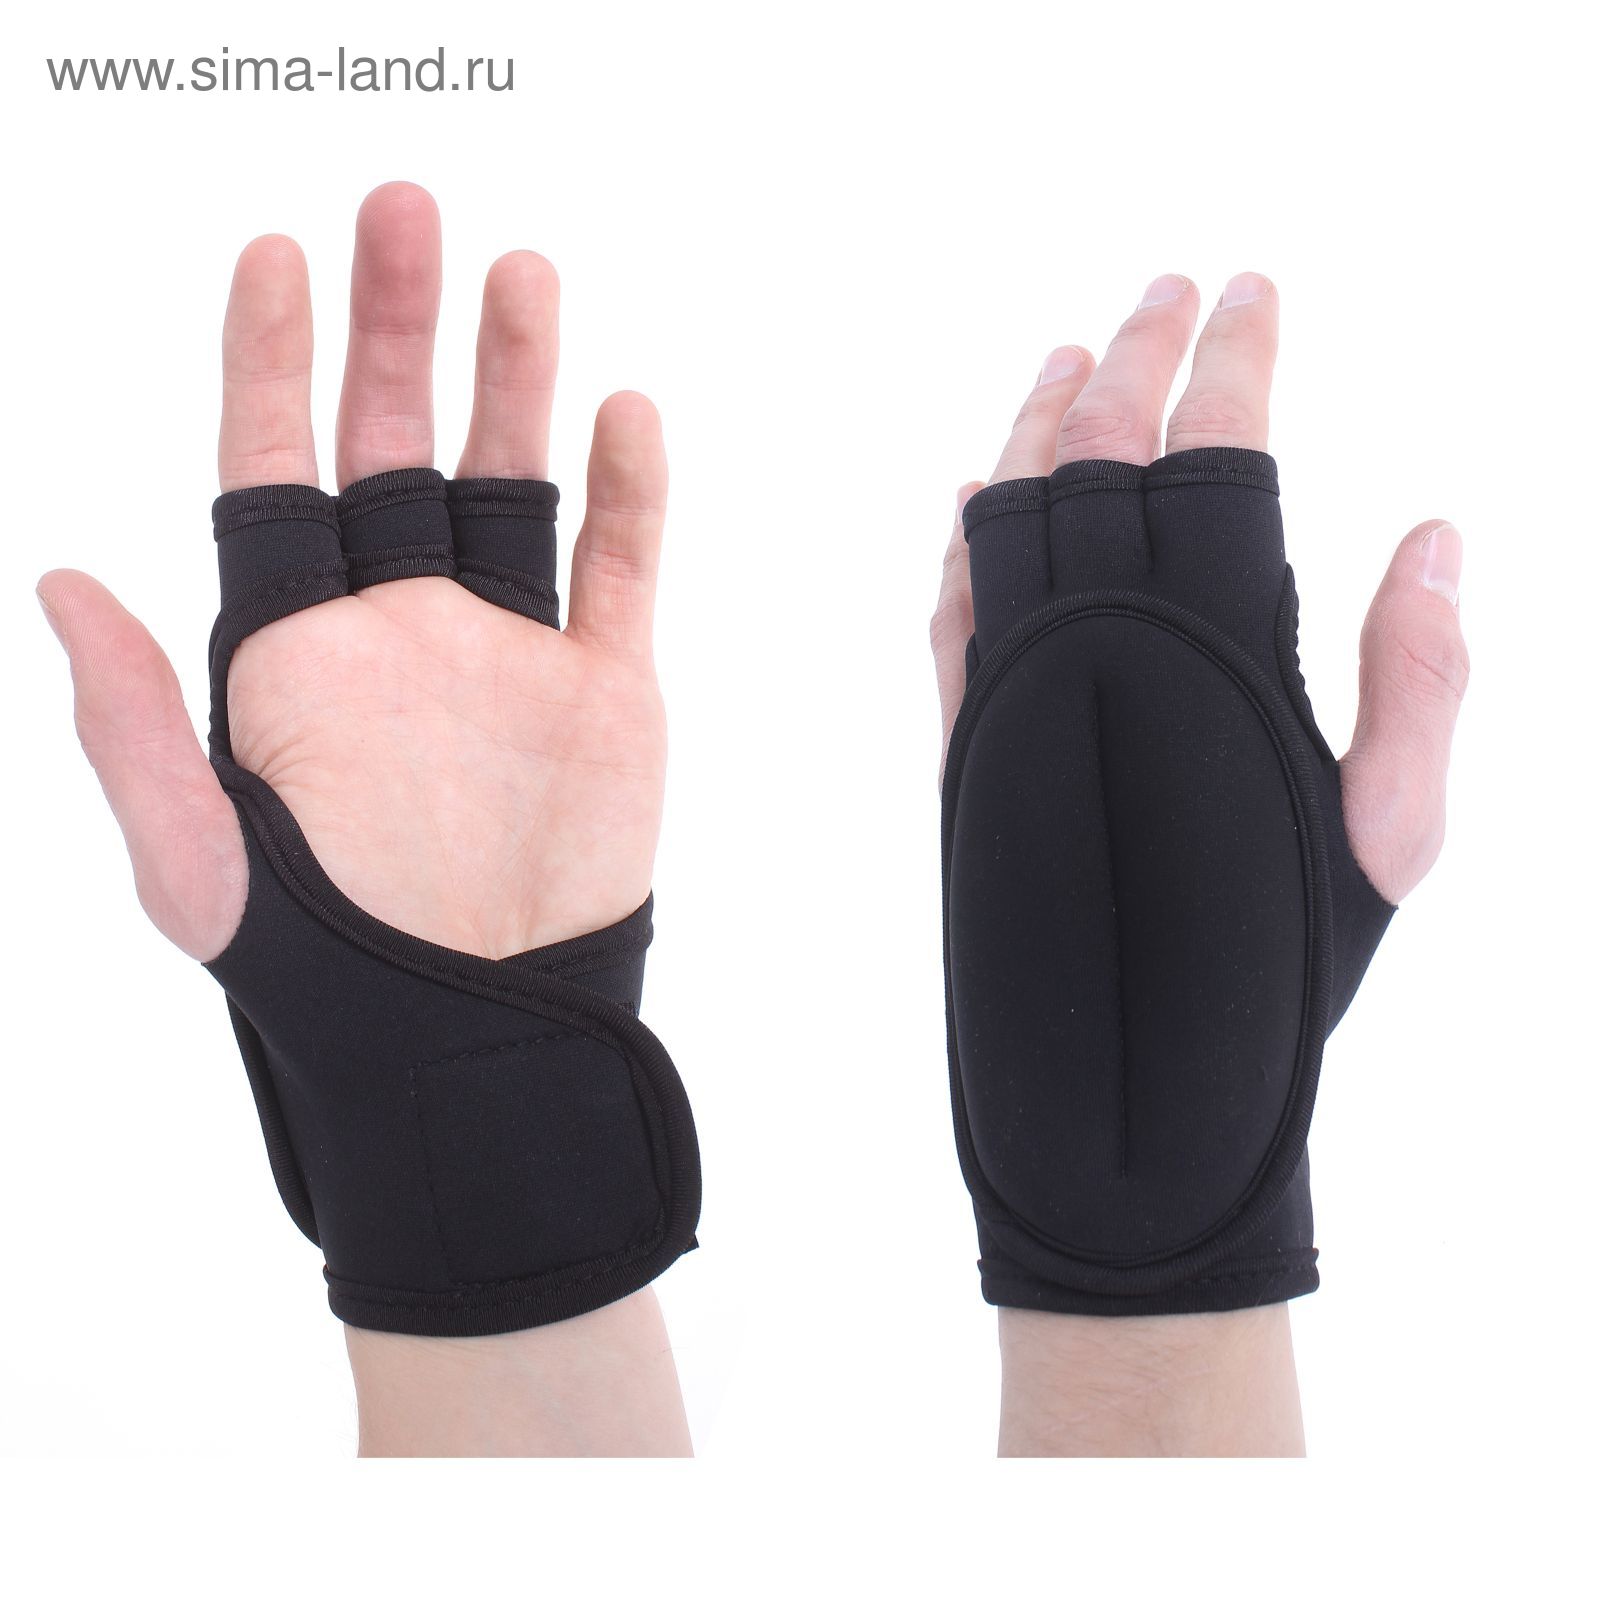 Перчатки-утяжелители (вес пары 800 гр), цвет черный